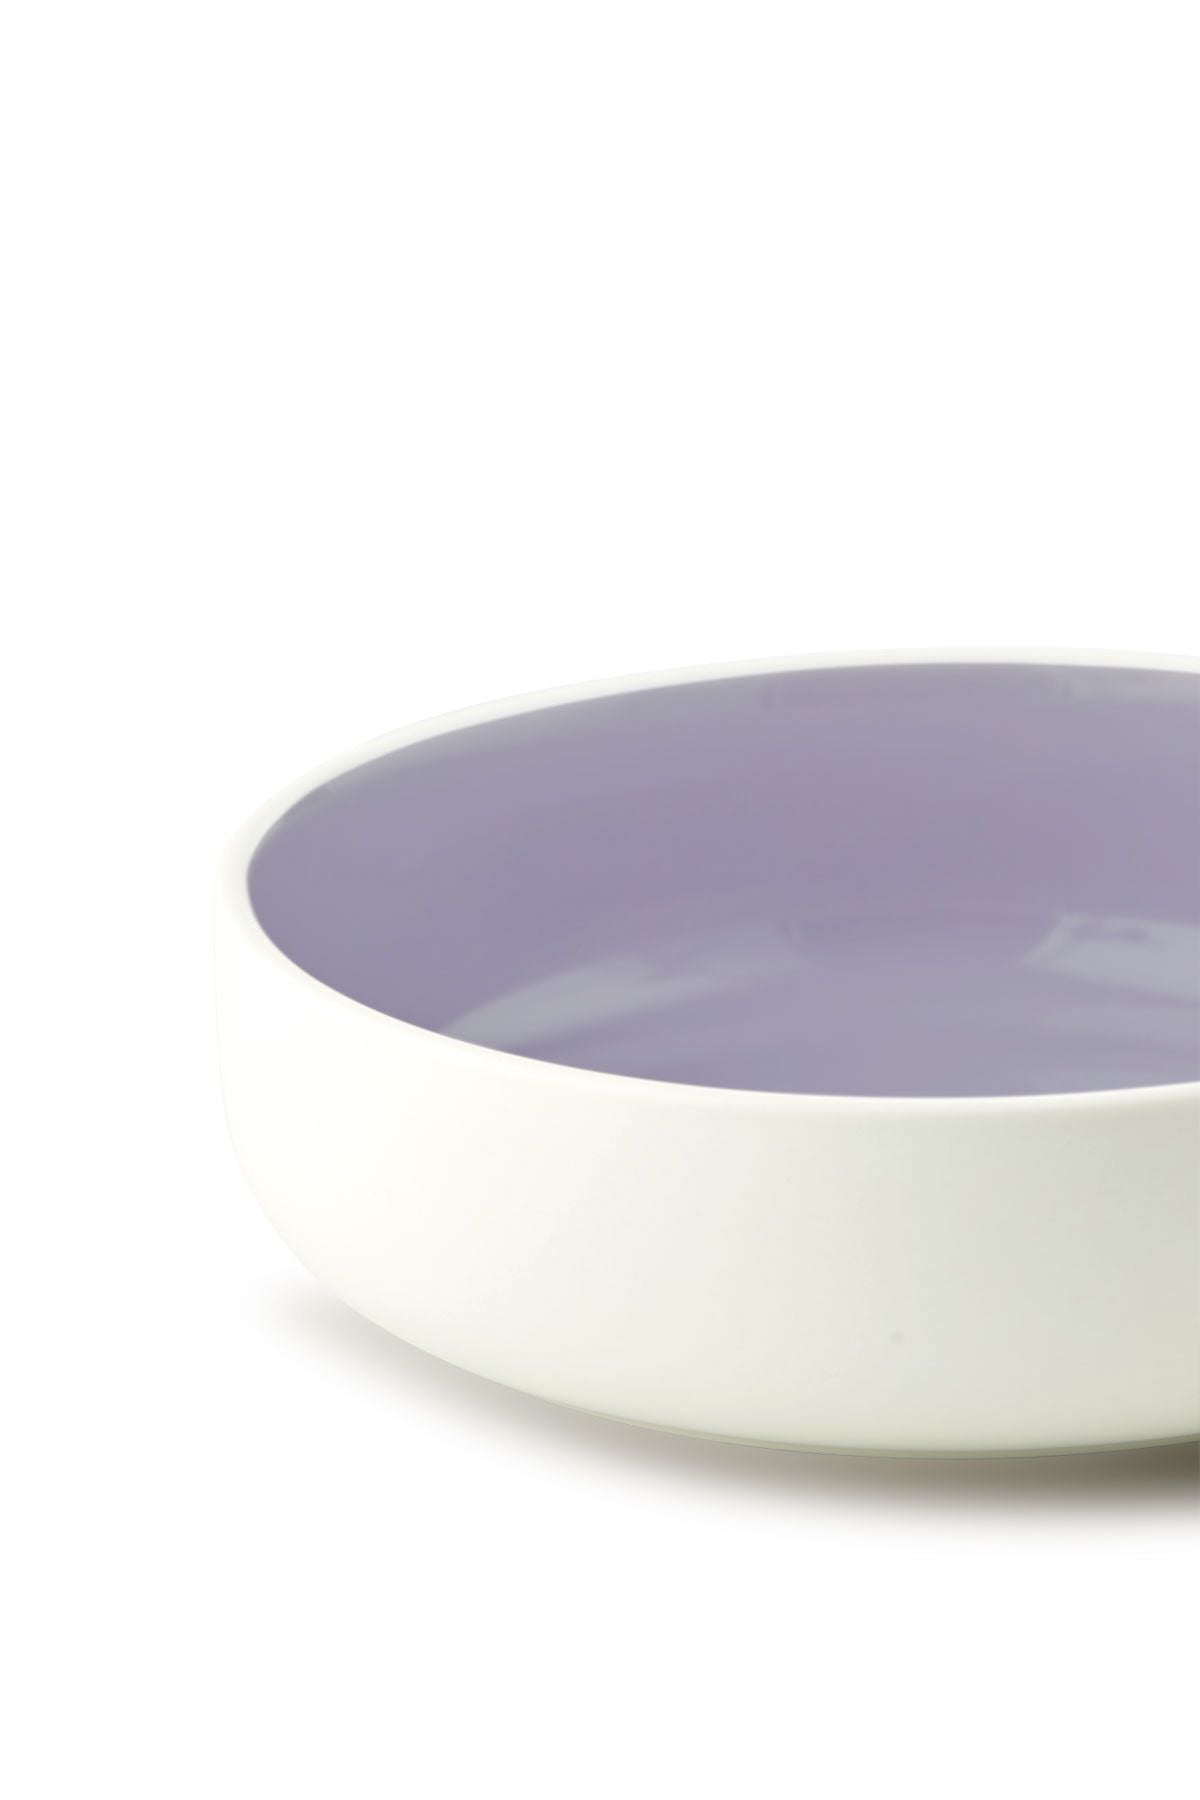 Estudio sobre tazón para servir Clayware, marfil/luz púrpura